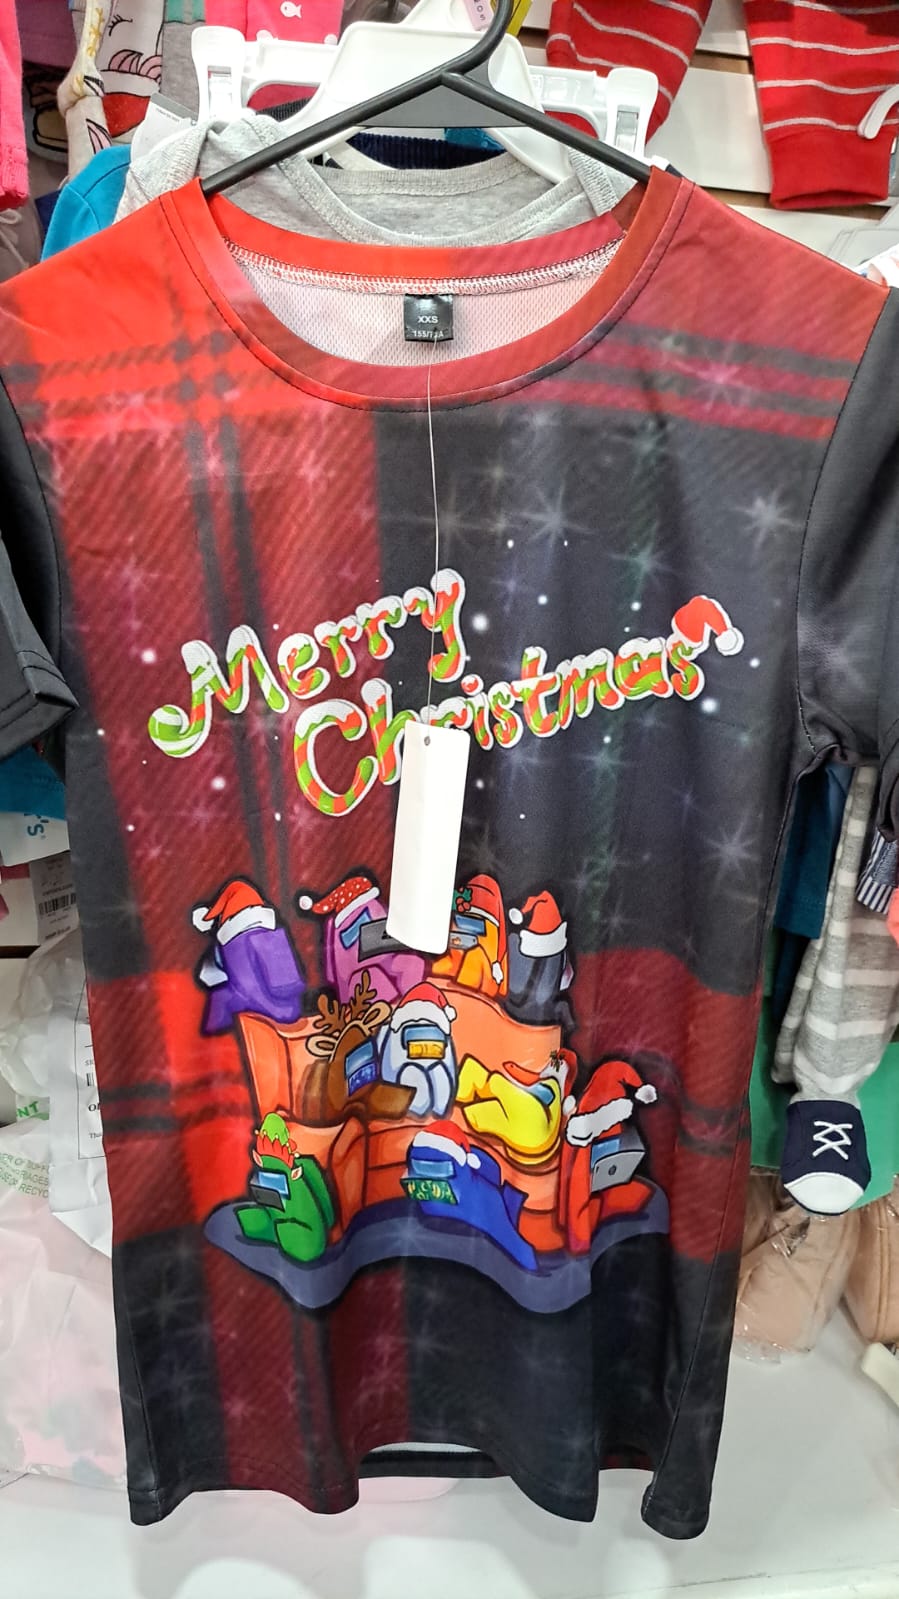 Sale Among US Merry Christmas Tshirt